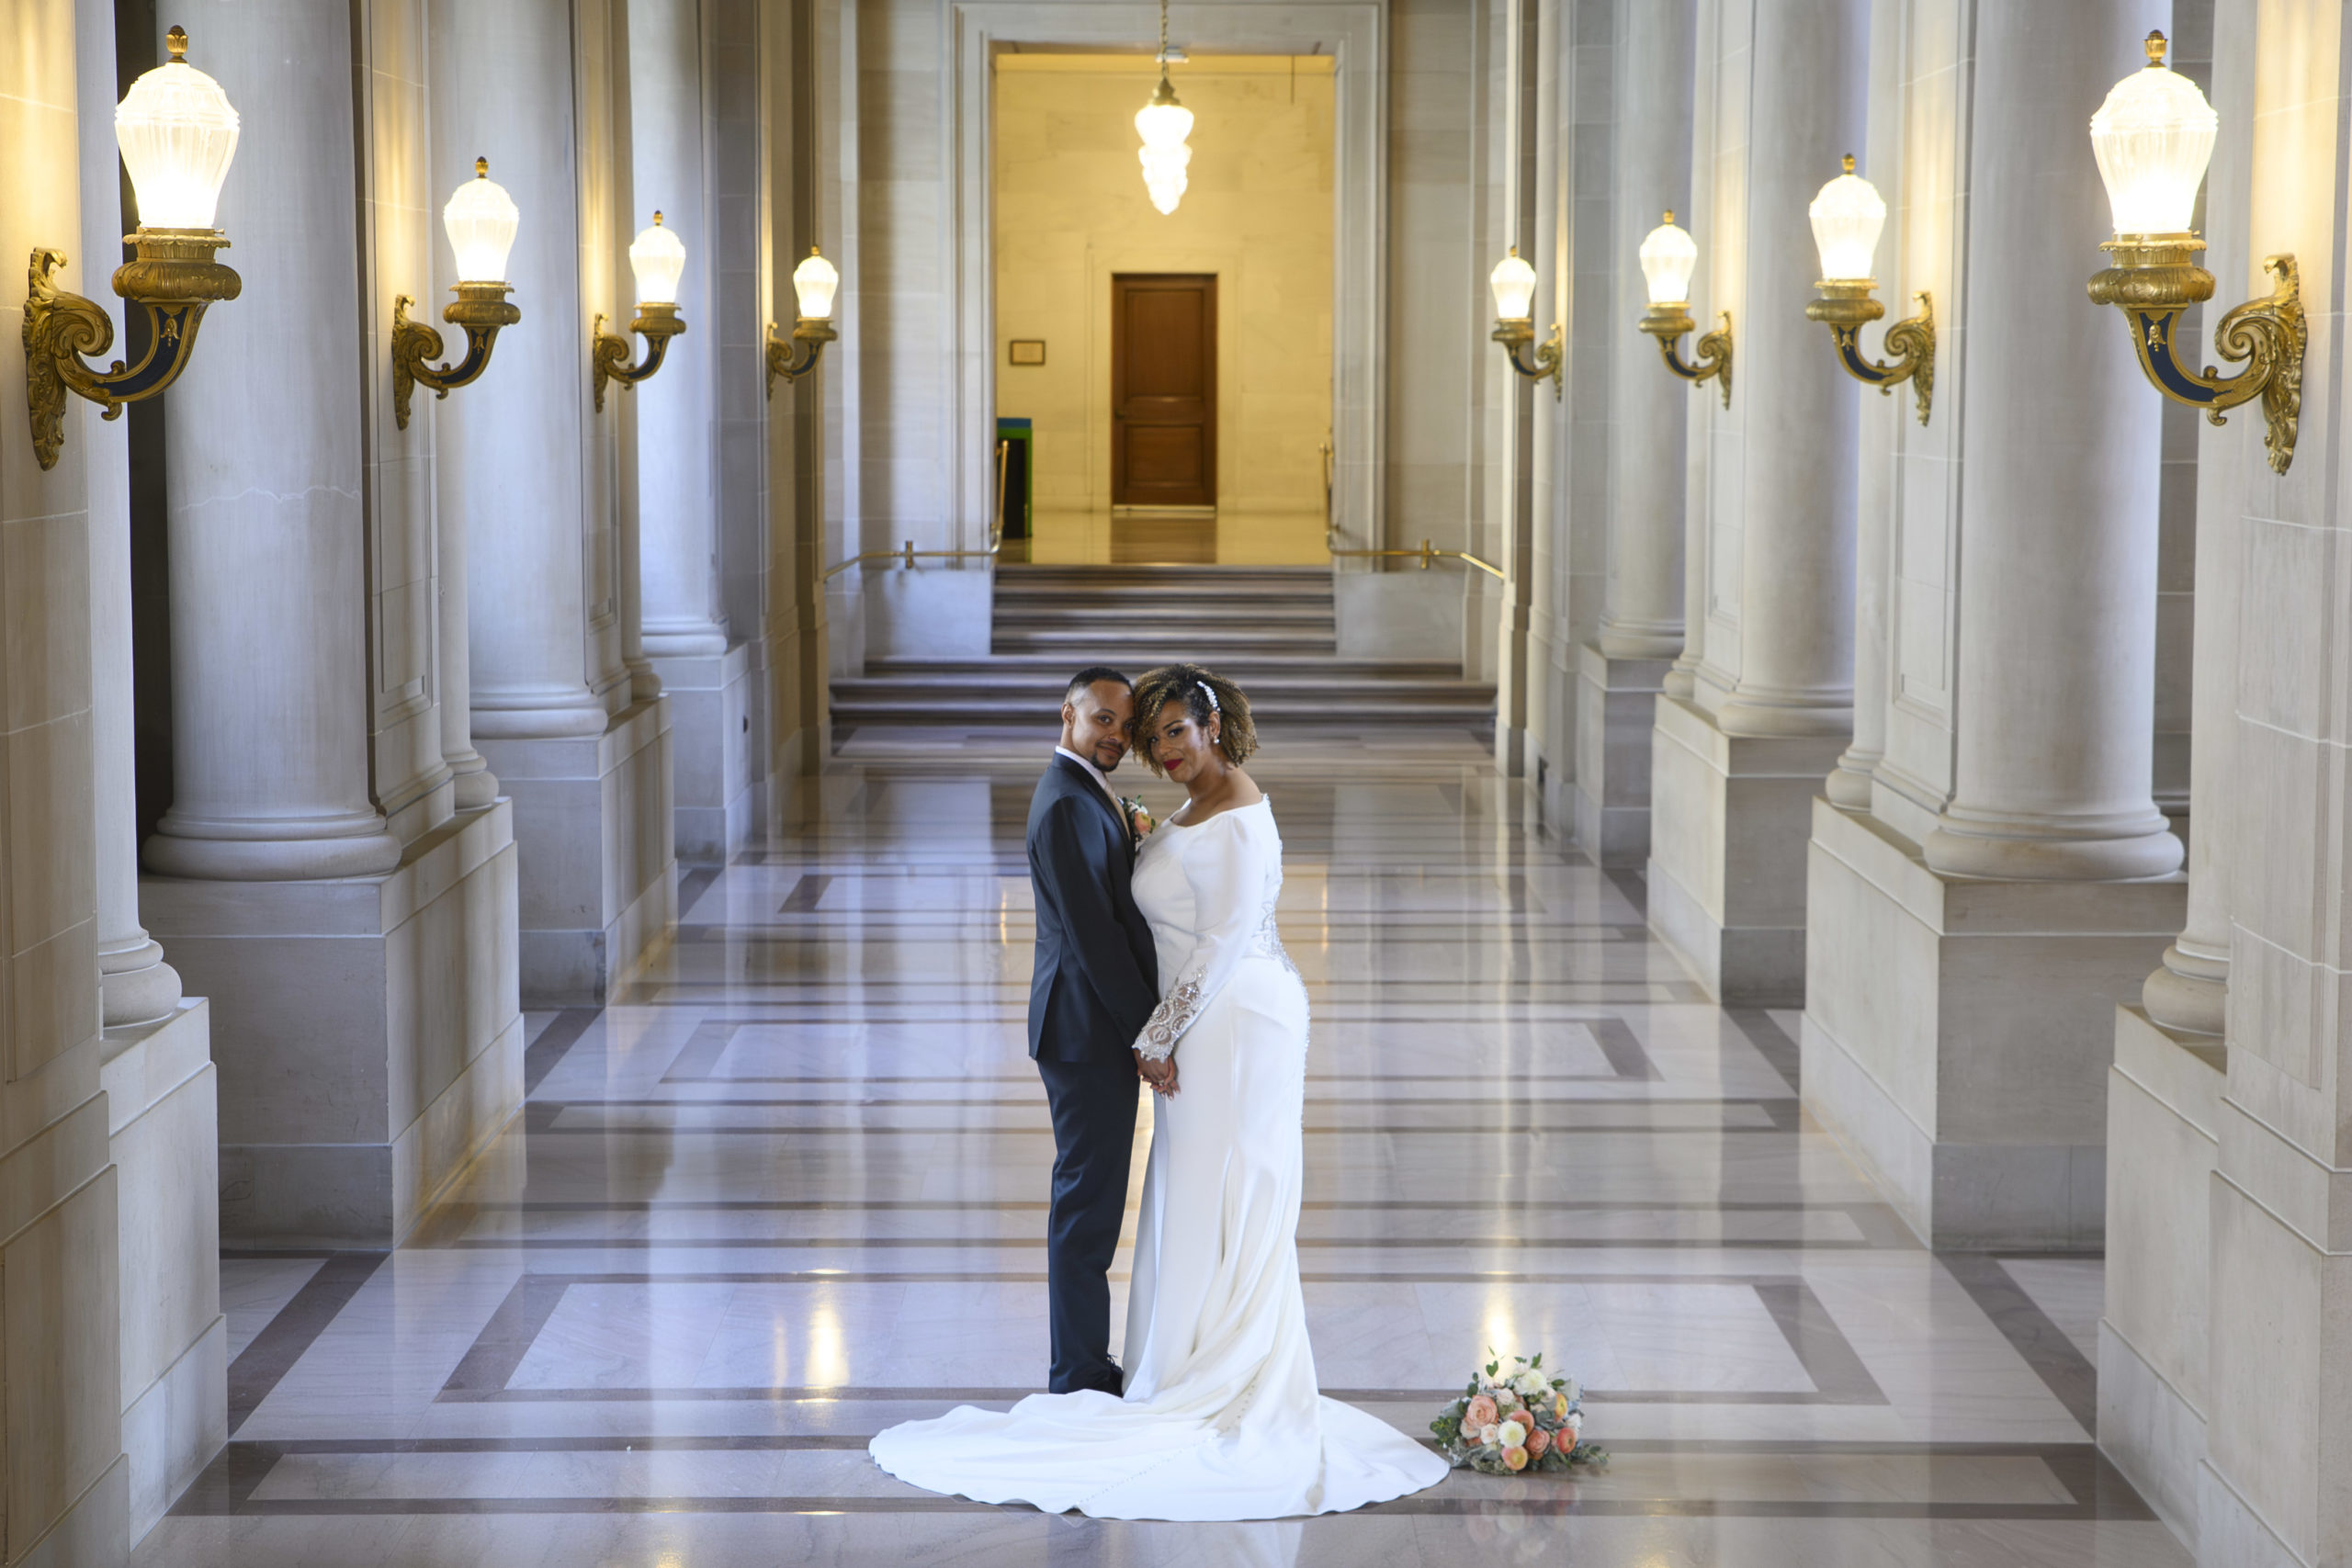 Bride and groom at San Francisco city hall